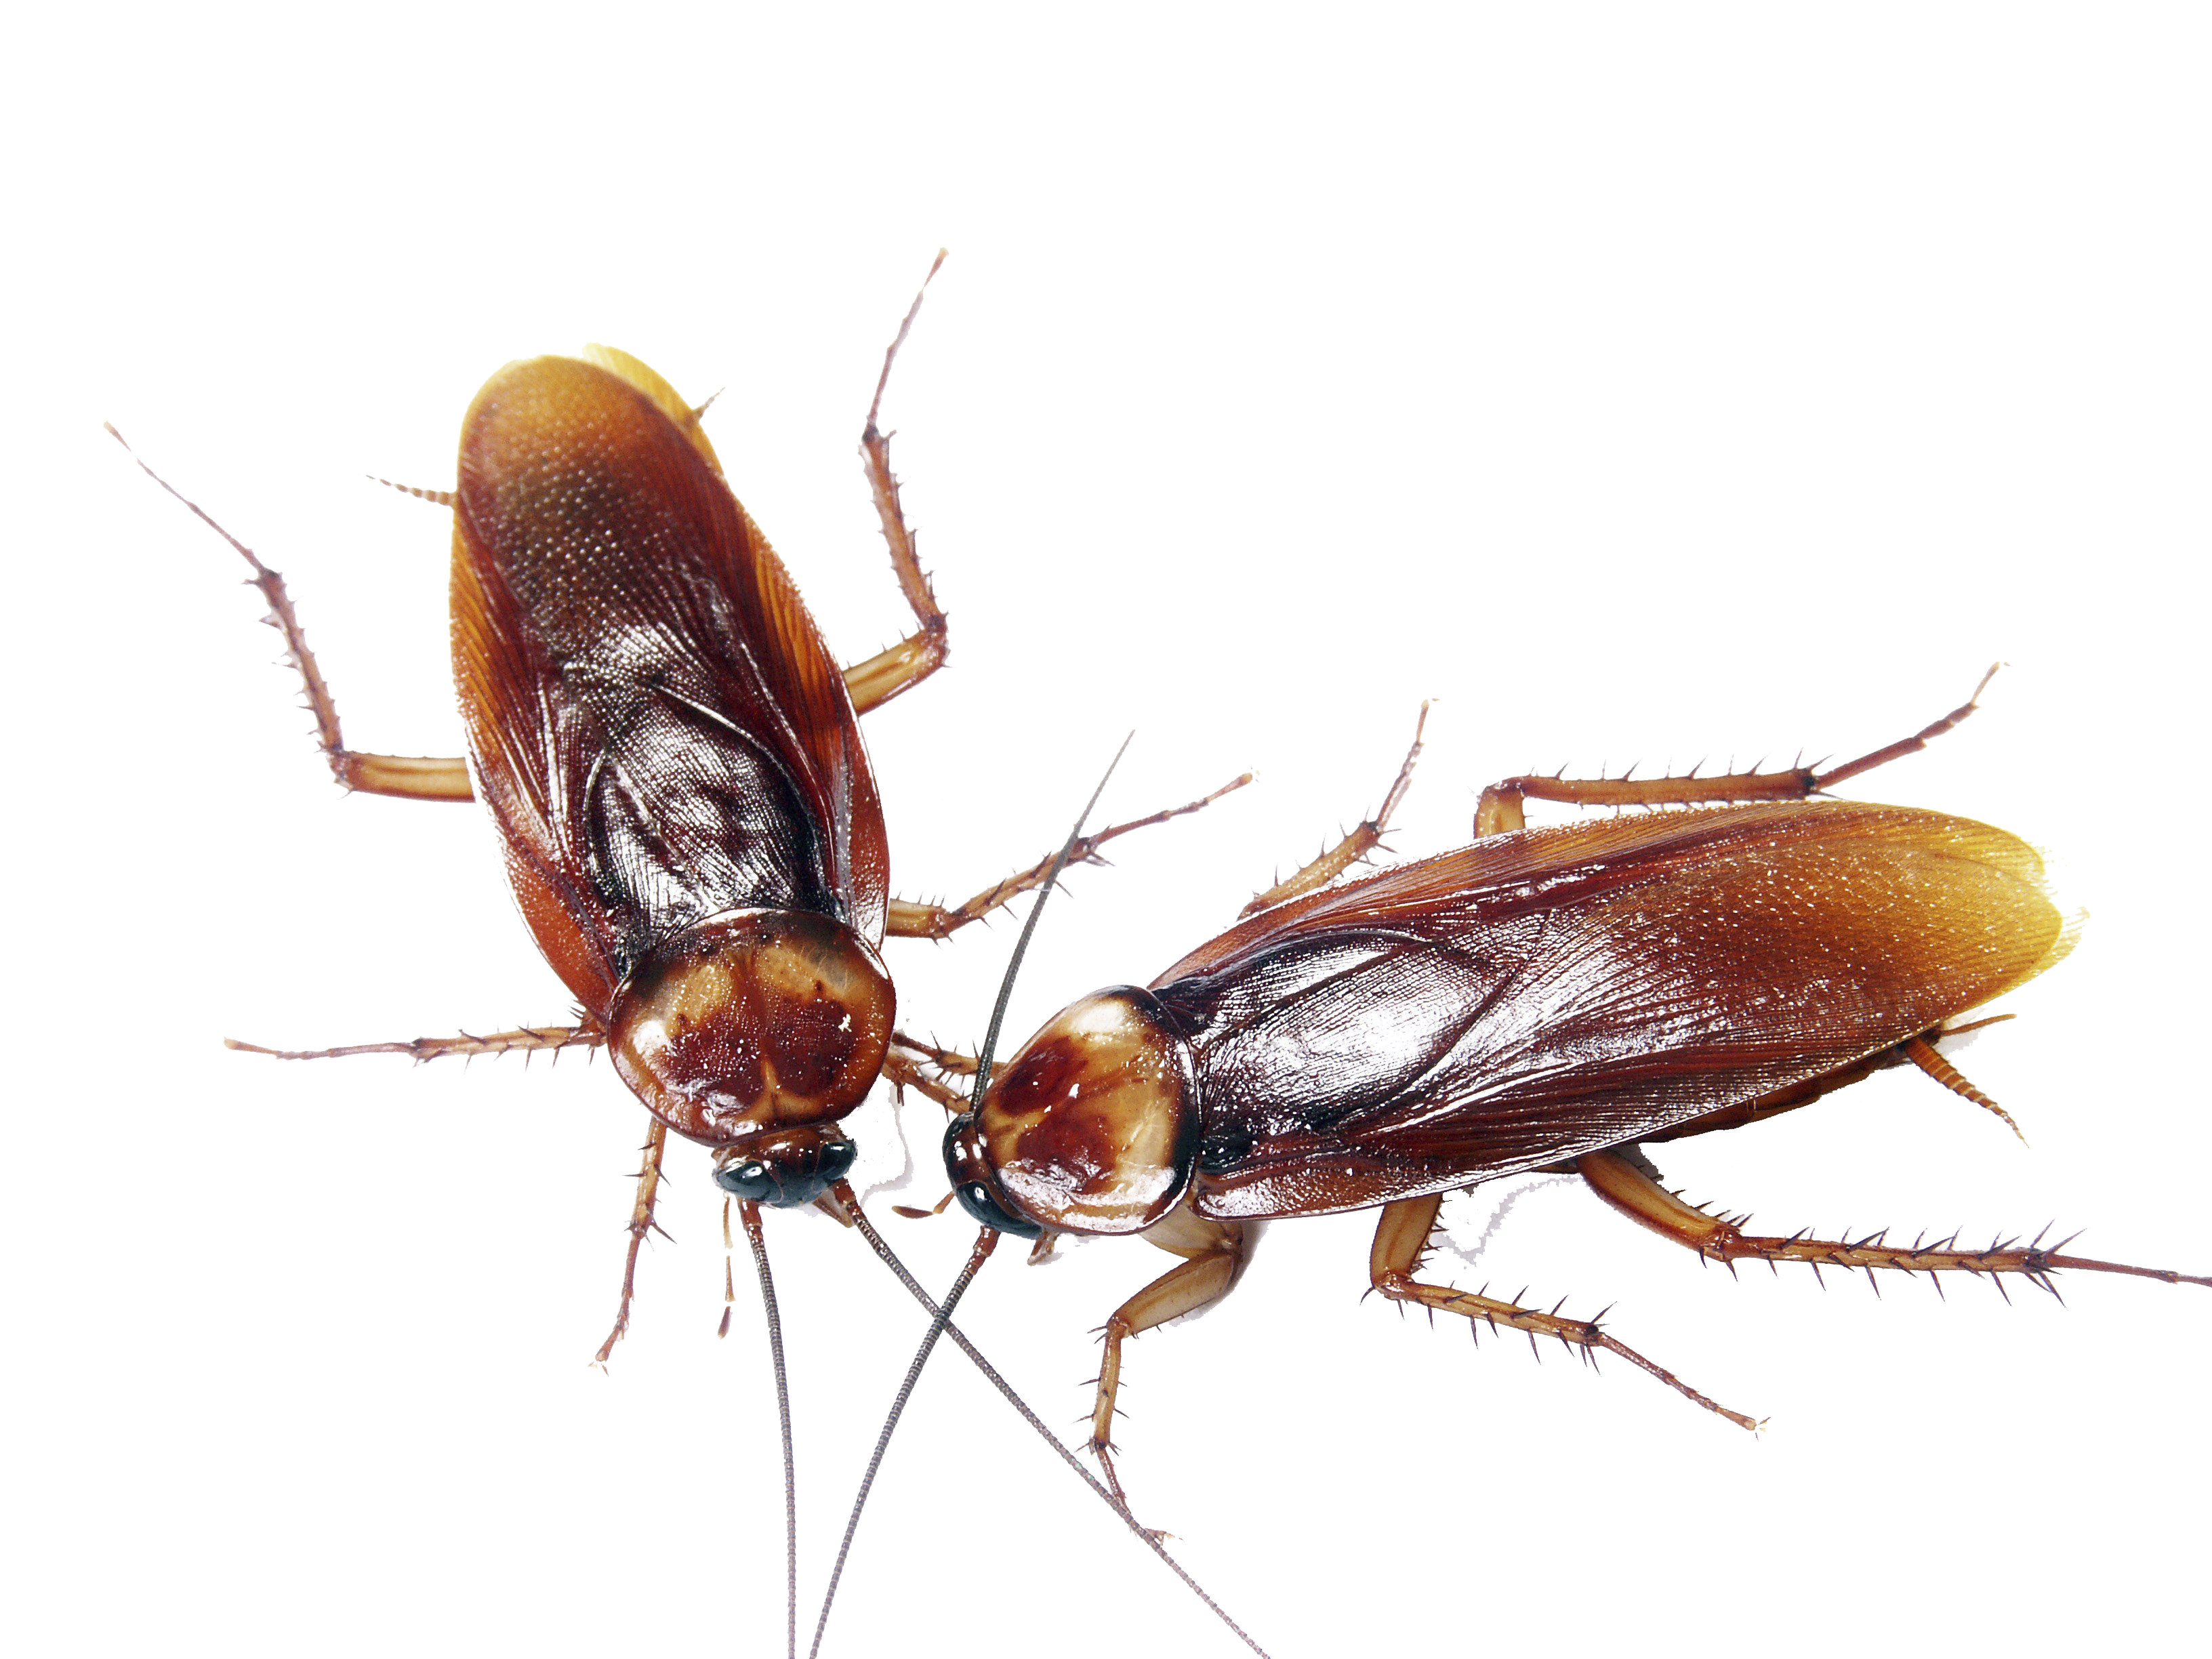 American Cockroach Image Transparente